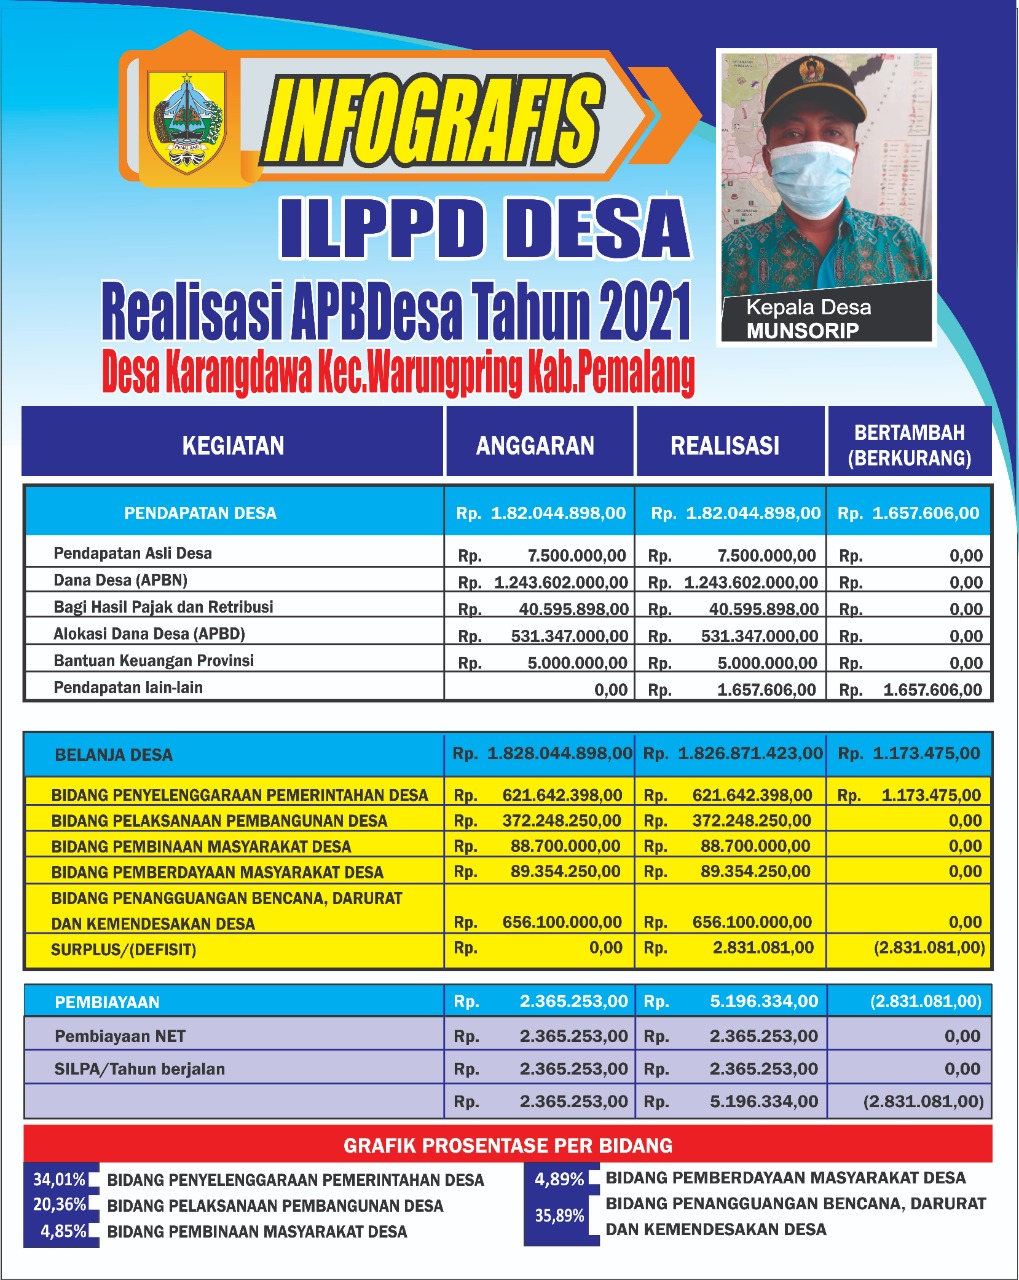 ILPPBDes 2021